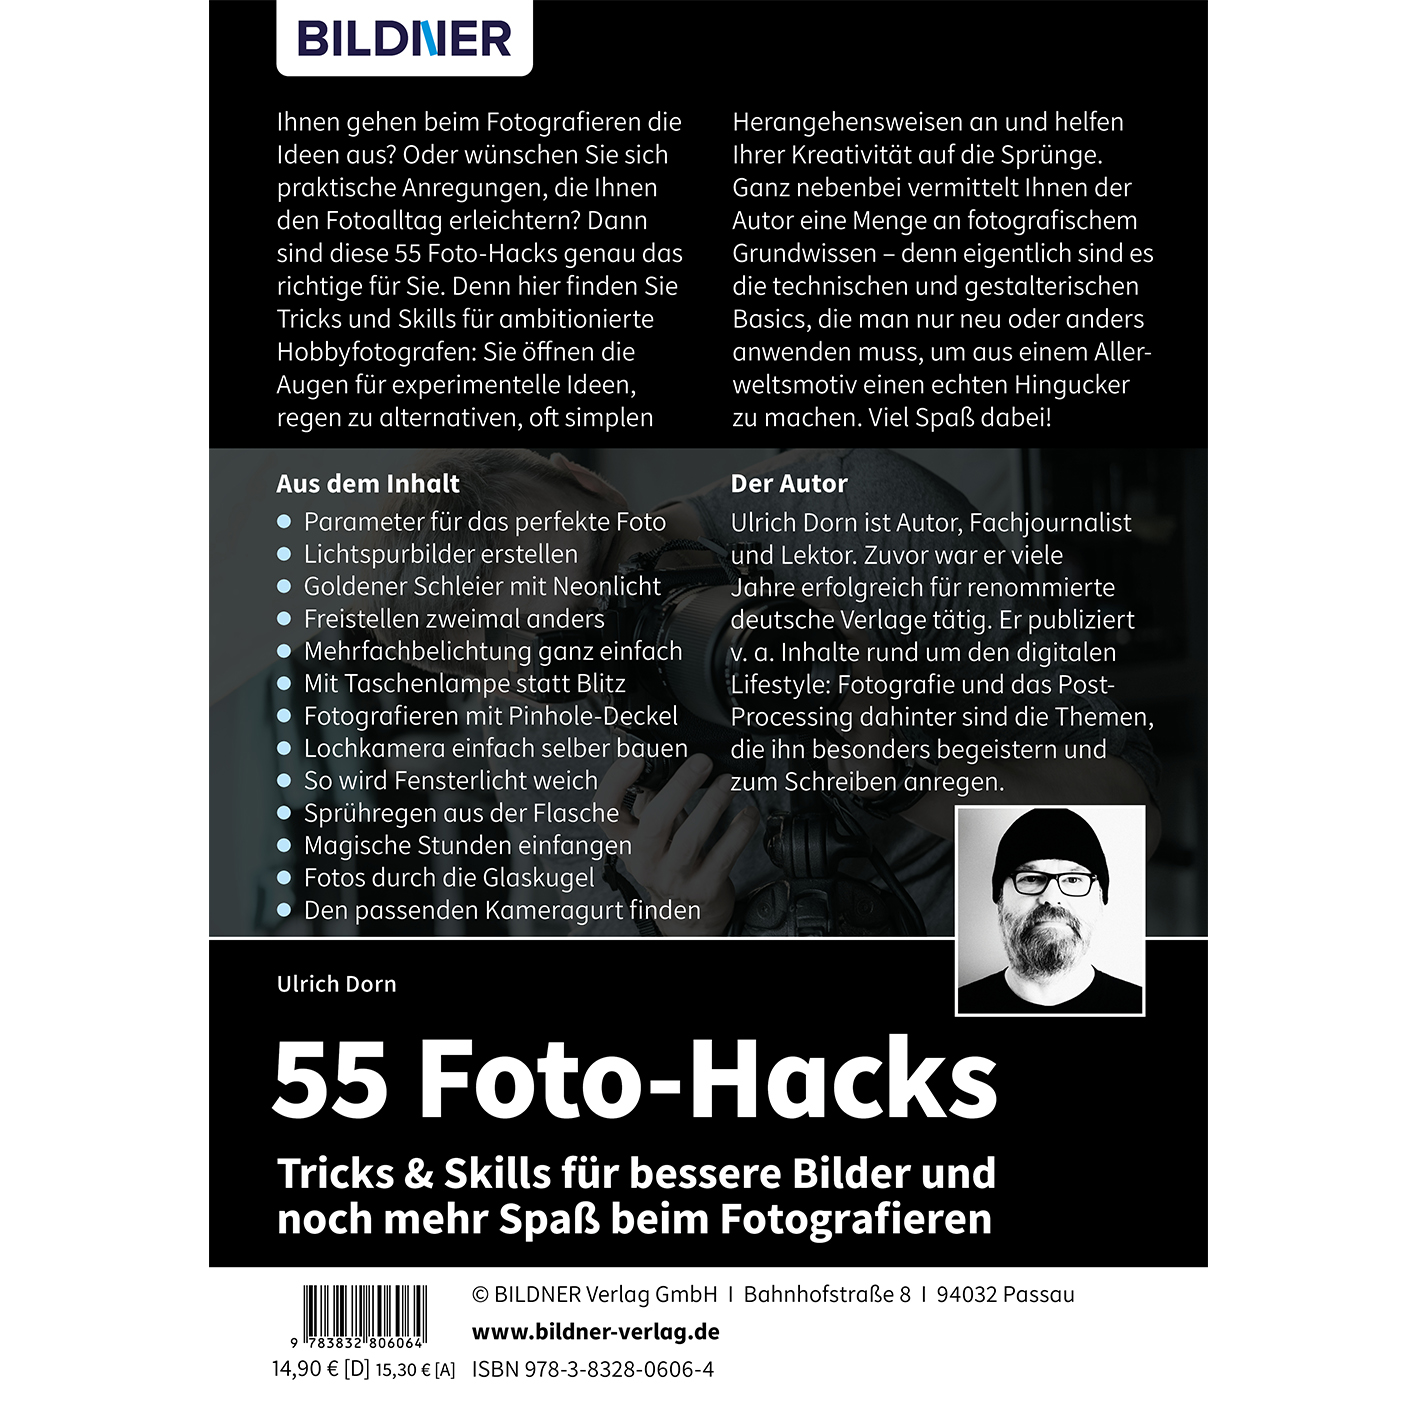 Spaß 55 Bilder – für & beim bessere noch Skills Tricks und Fotografieren Foto-Hacks mehr